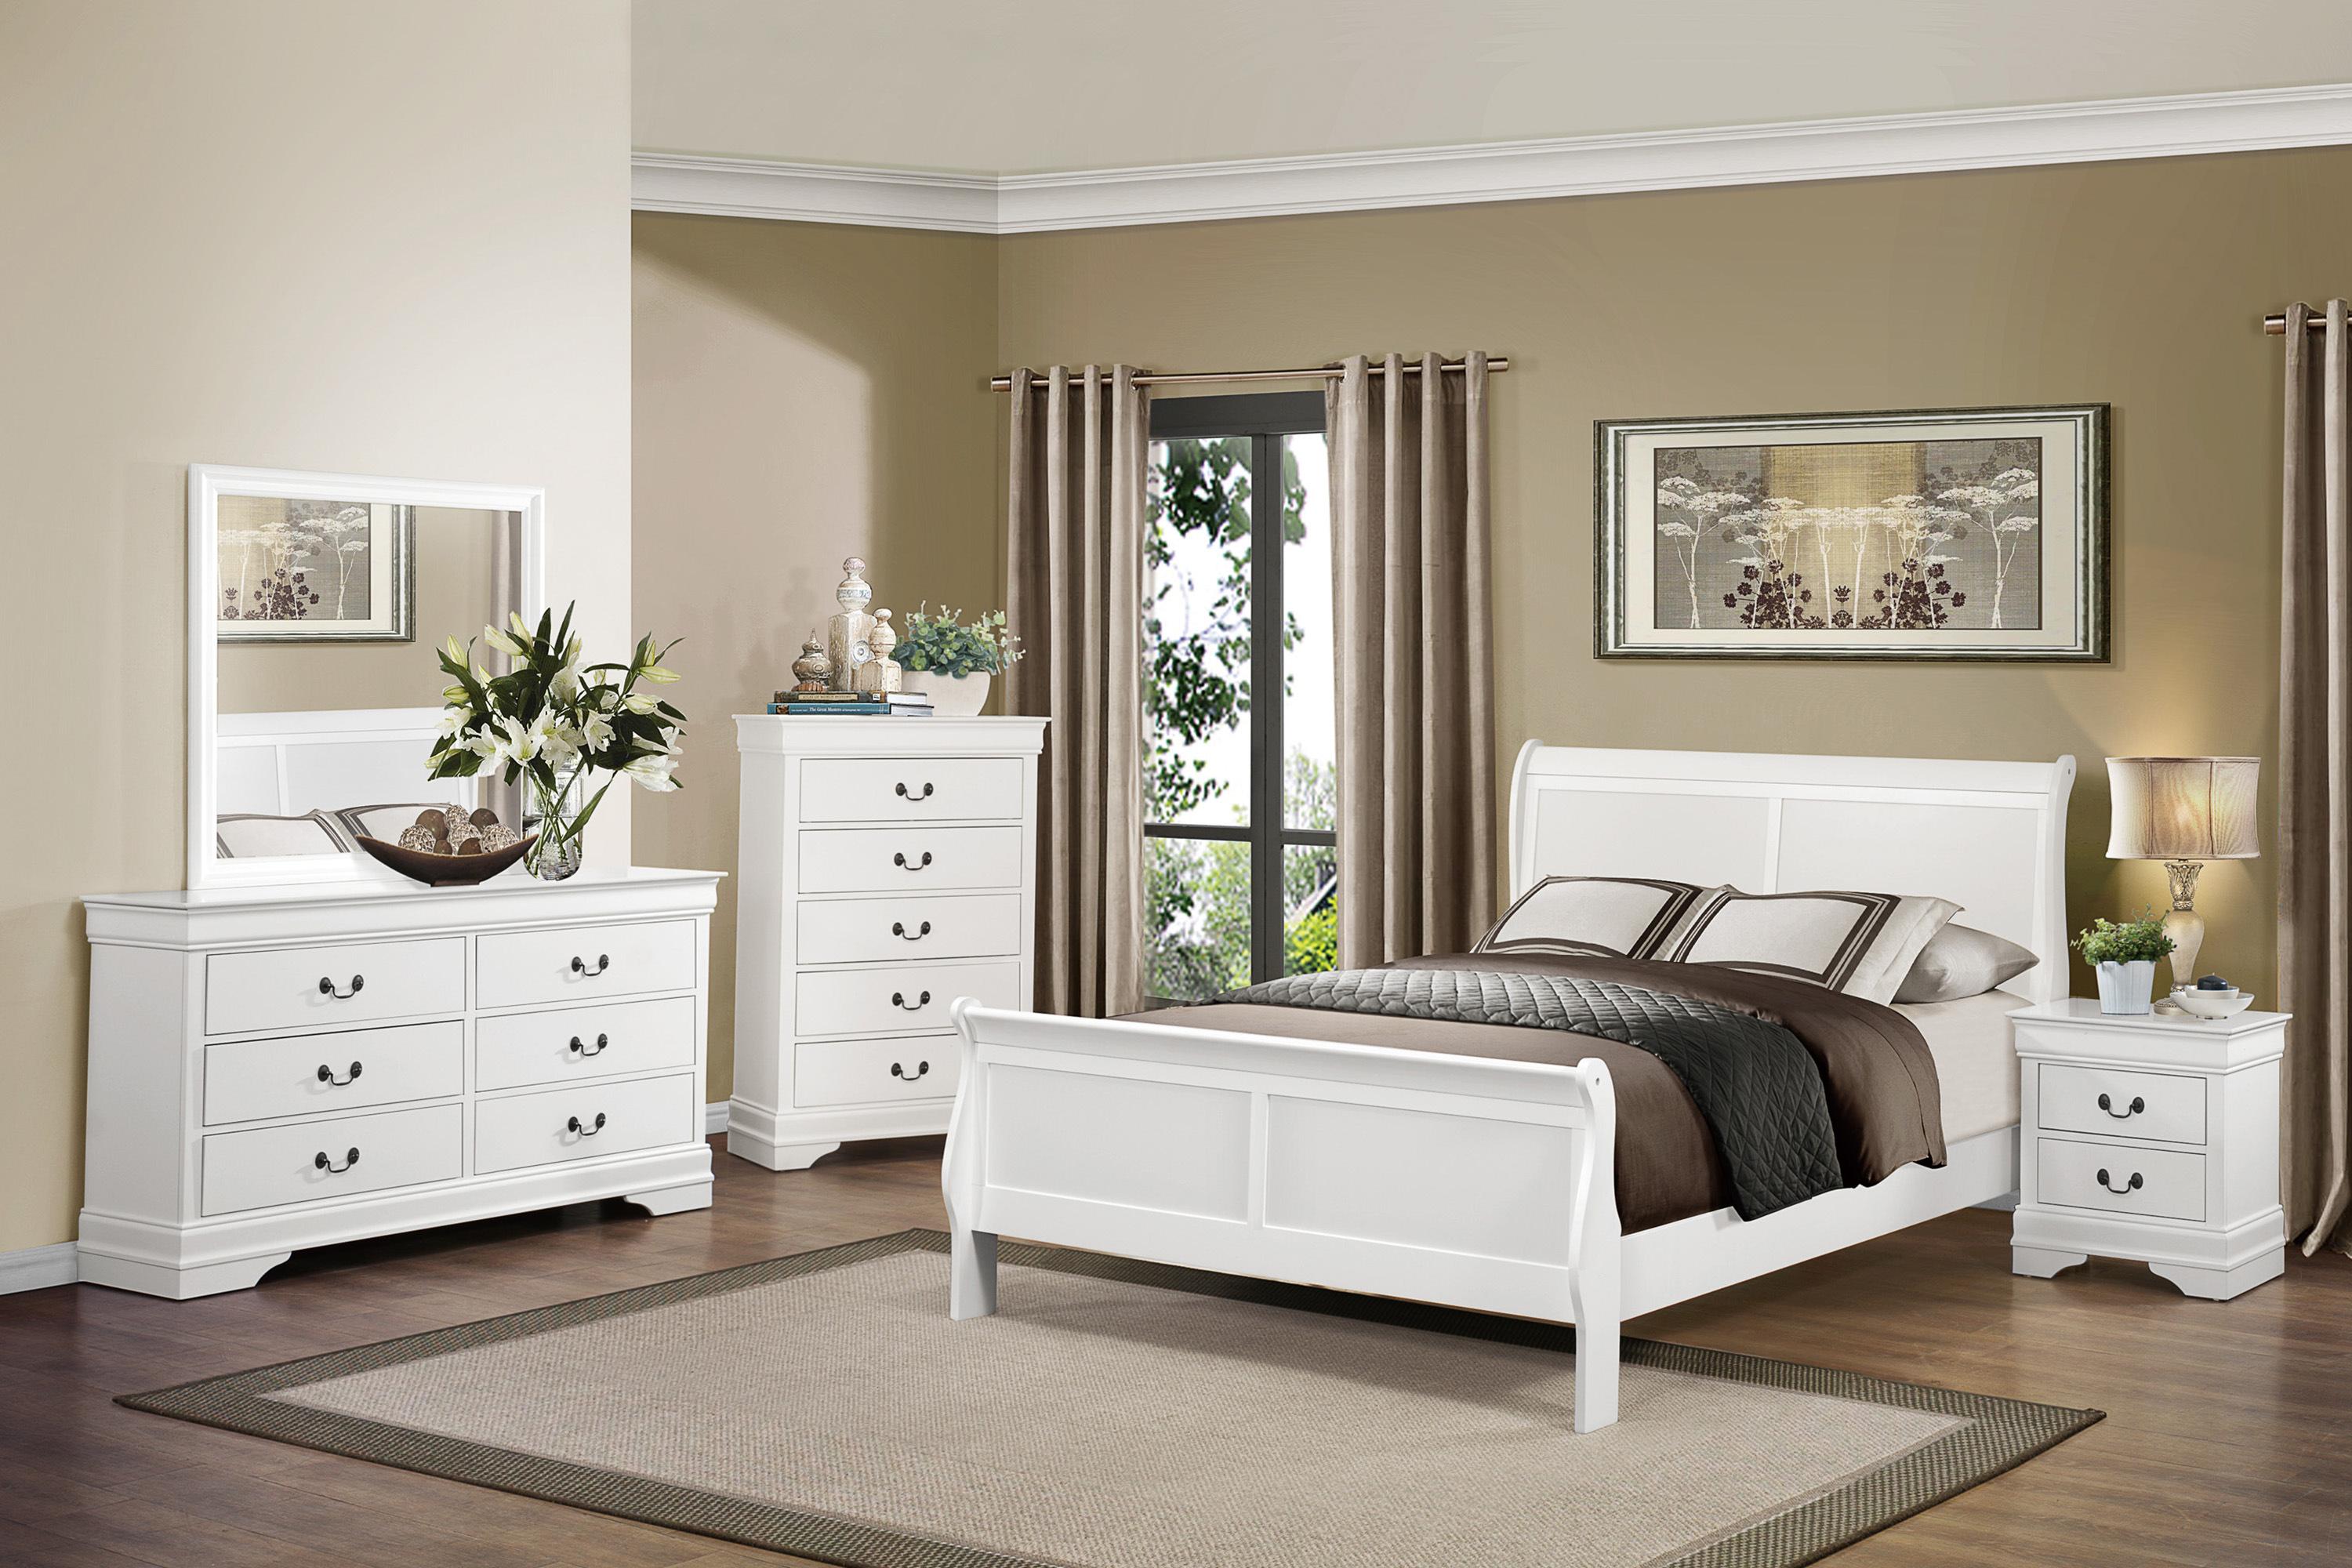 

    
Traditional White Wood Full Bedroom Set 5pcs Homelegance 2147FW-1* Mayville
